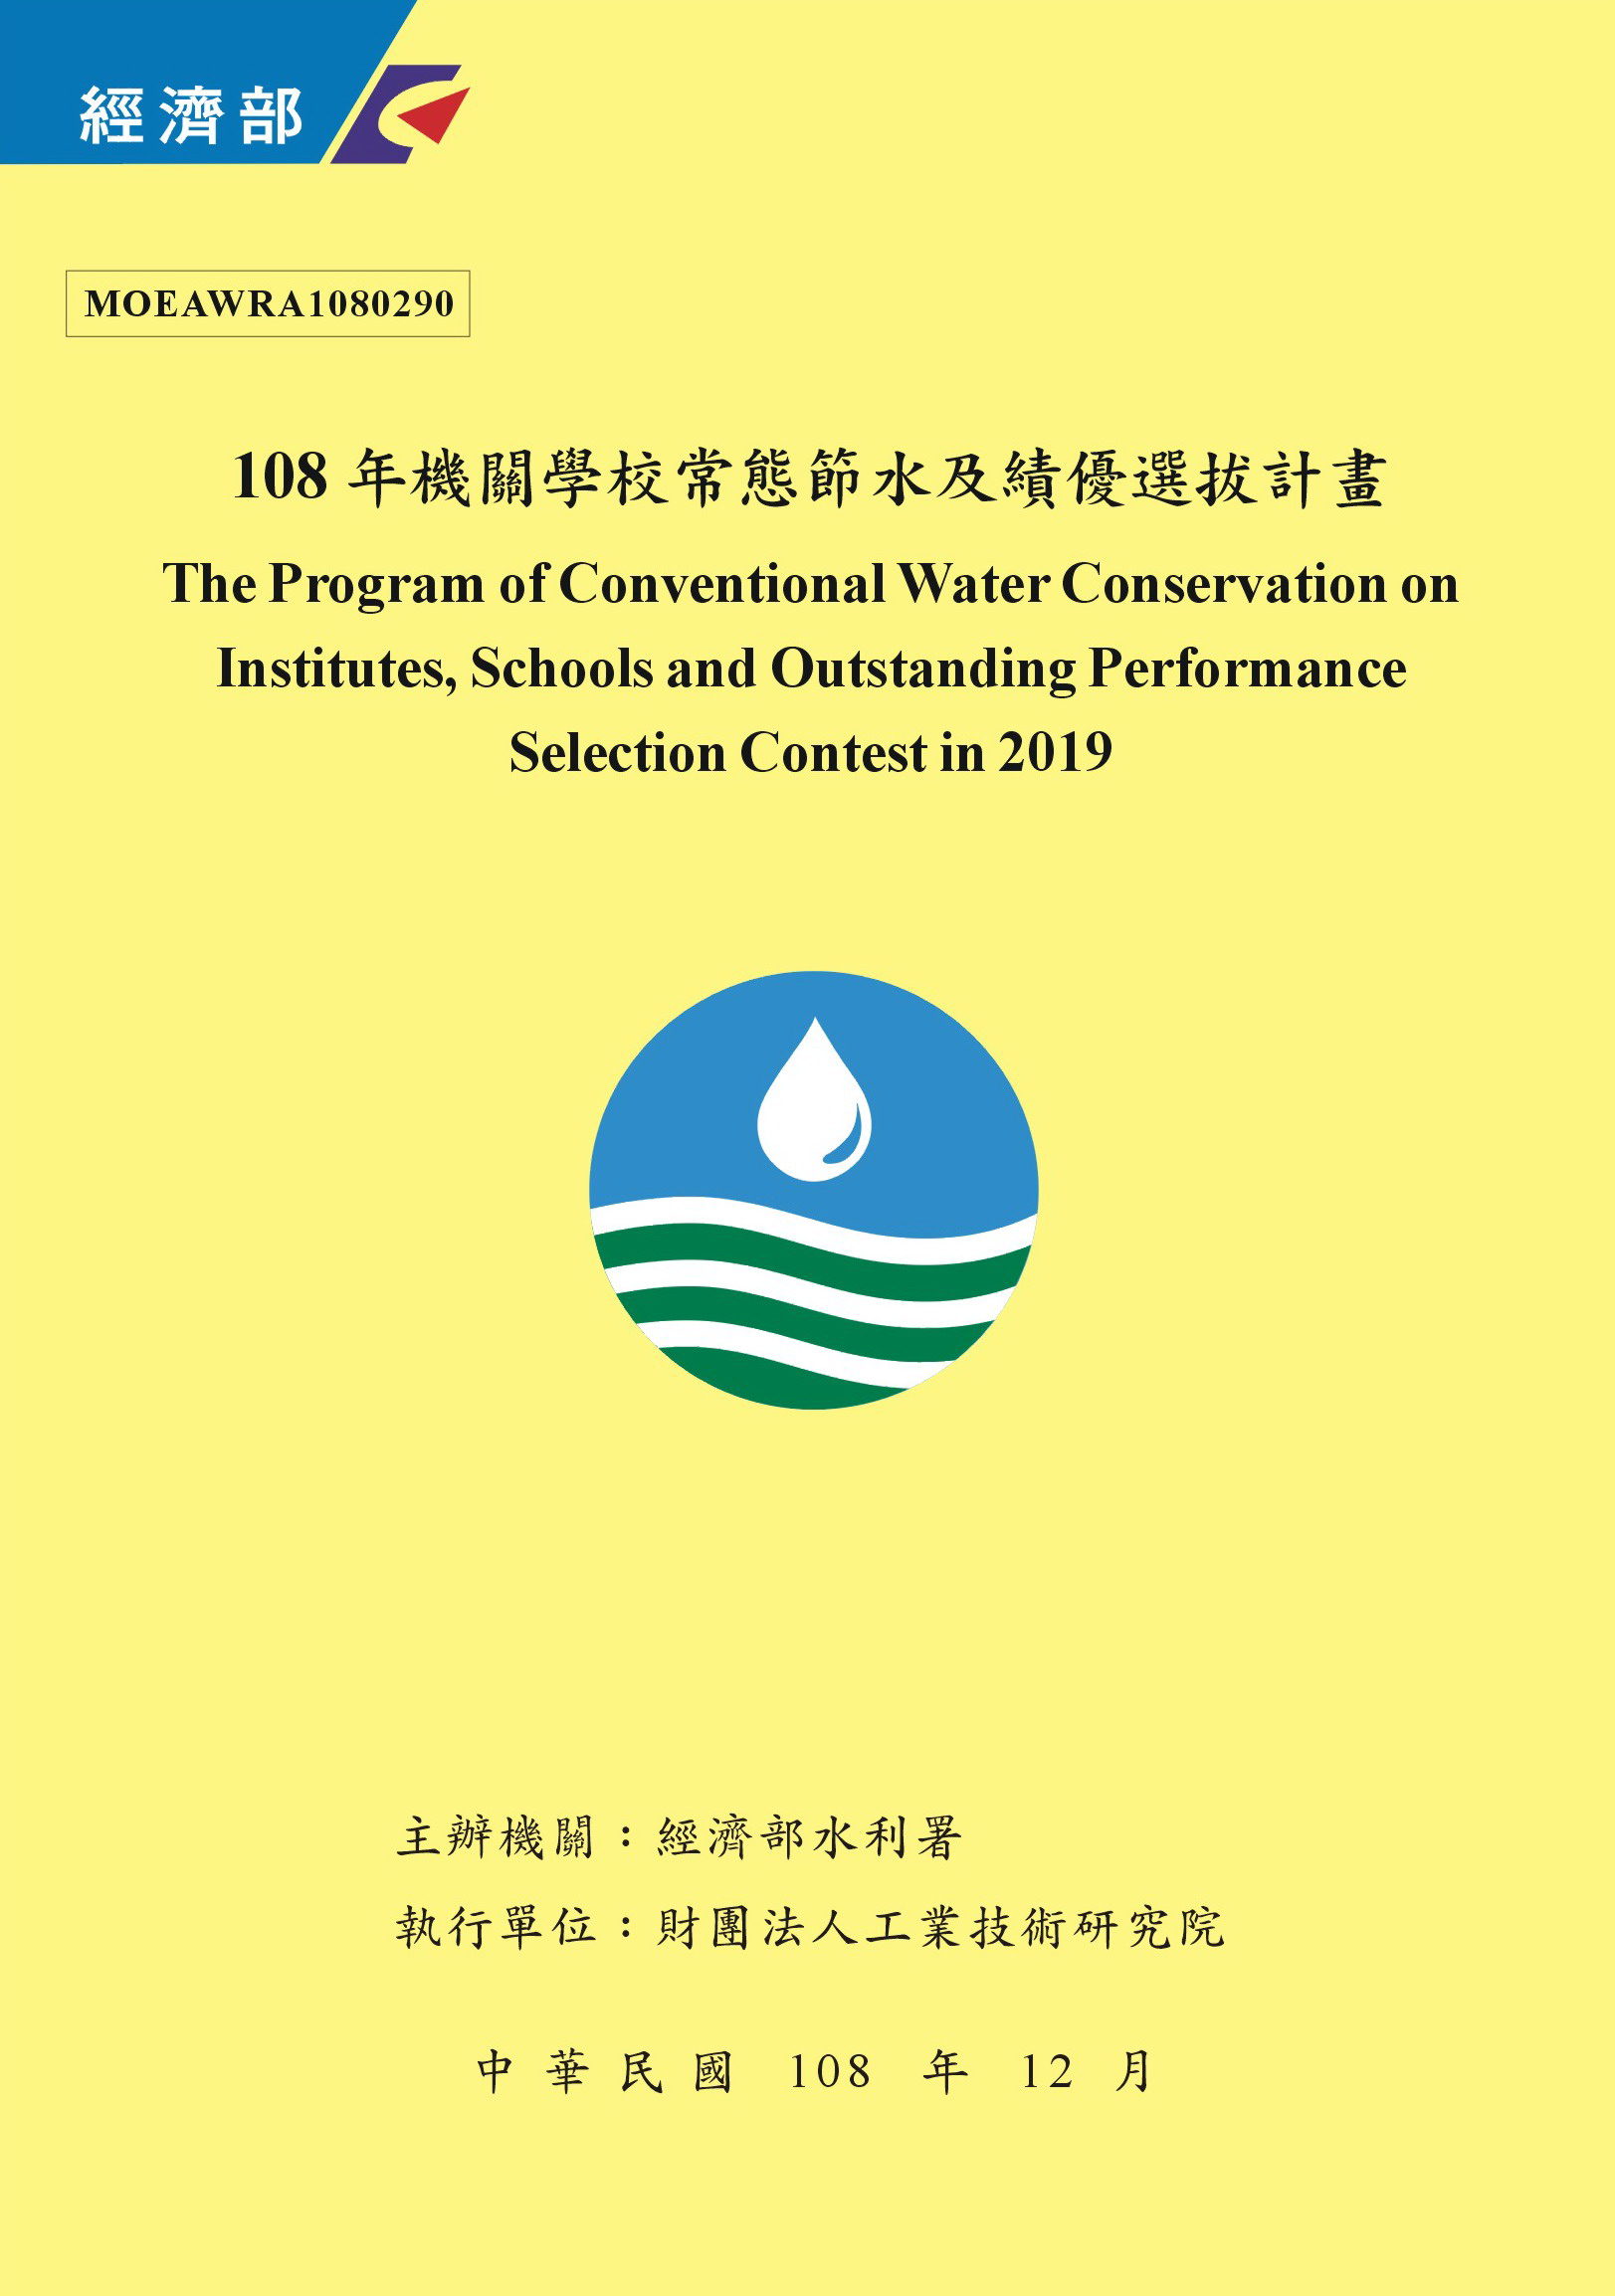 108年機關學校常態節水及績優選拔計畫